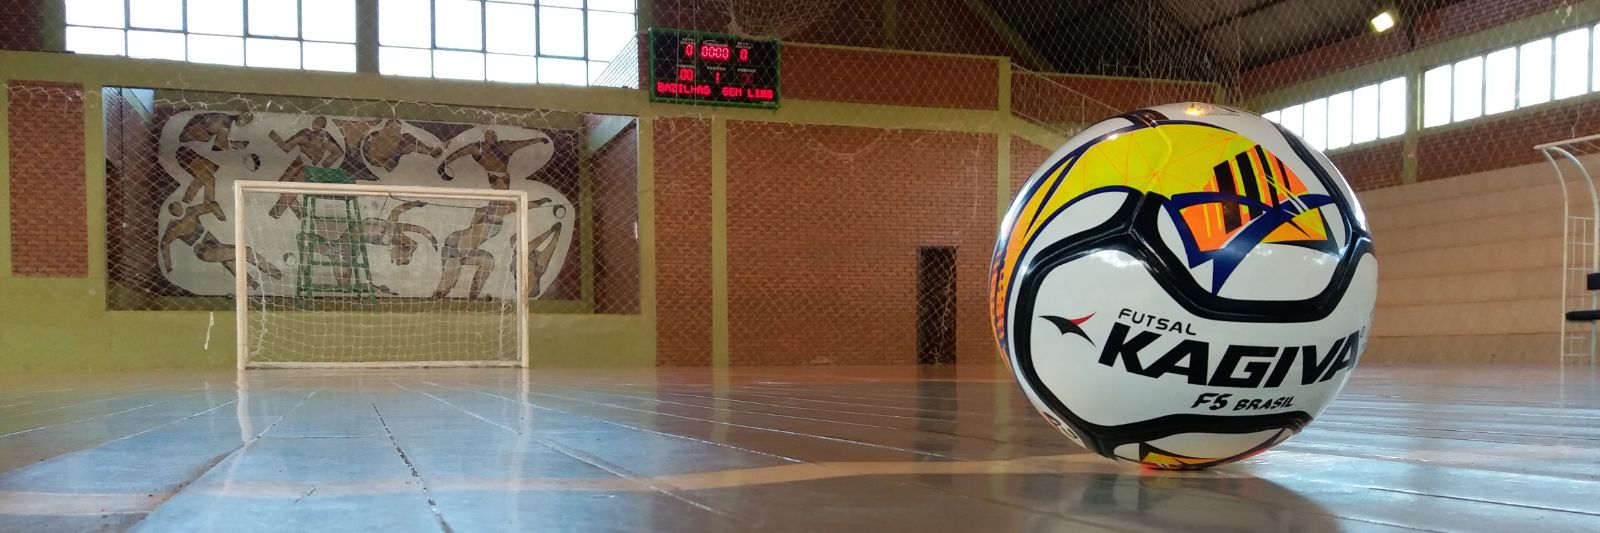 Campeonato Municipal E Aberto De Futsal